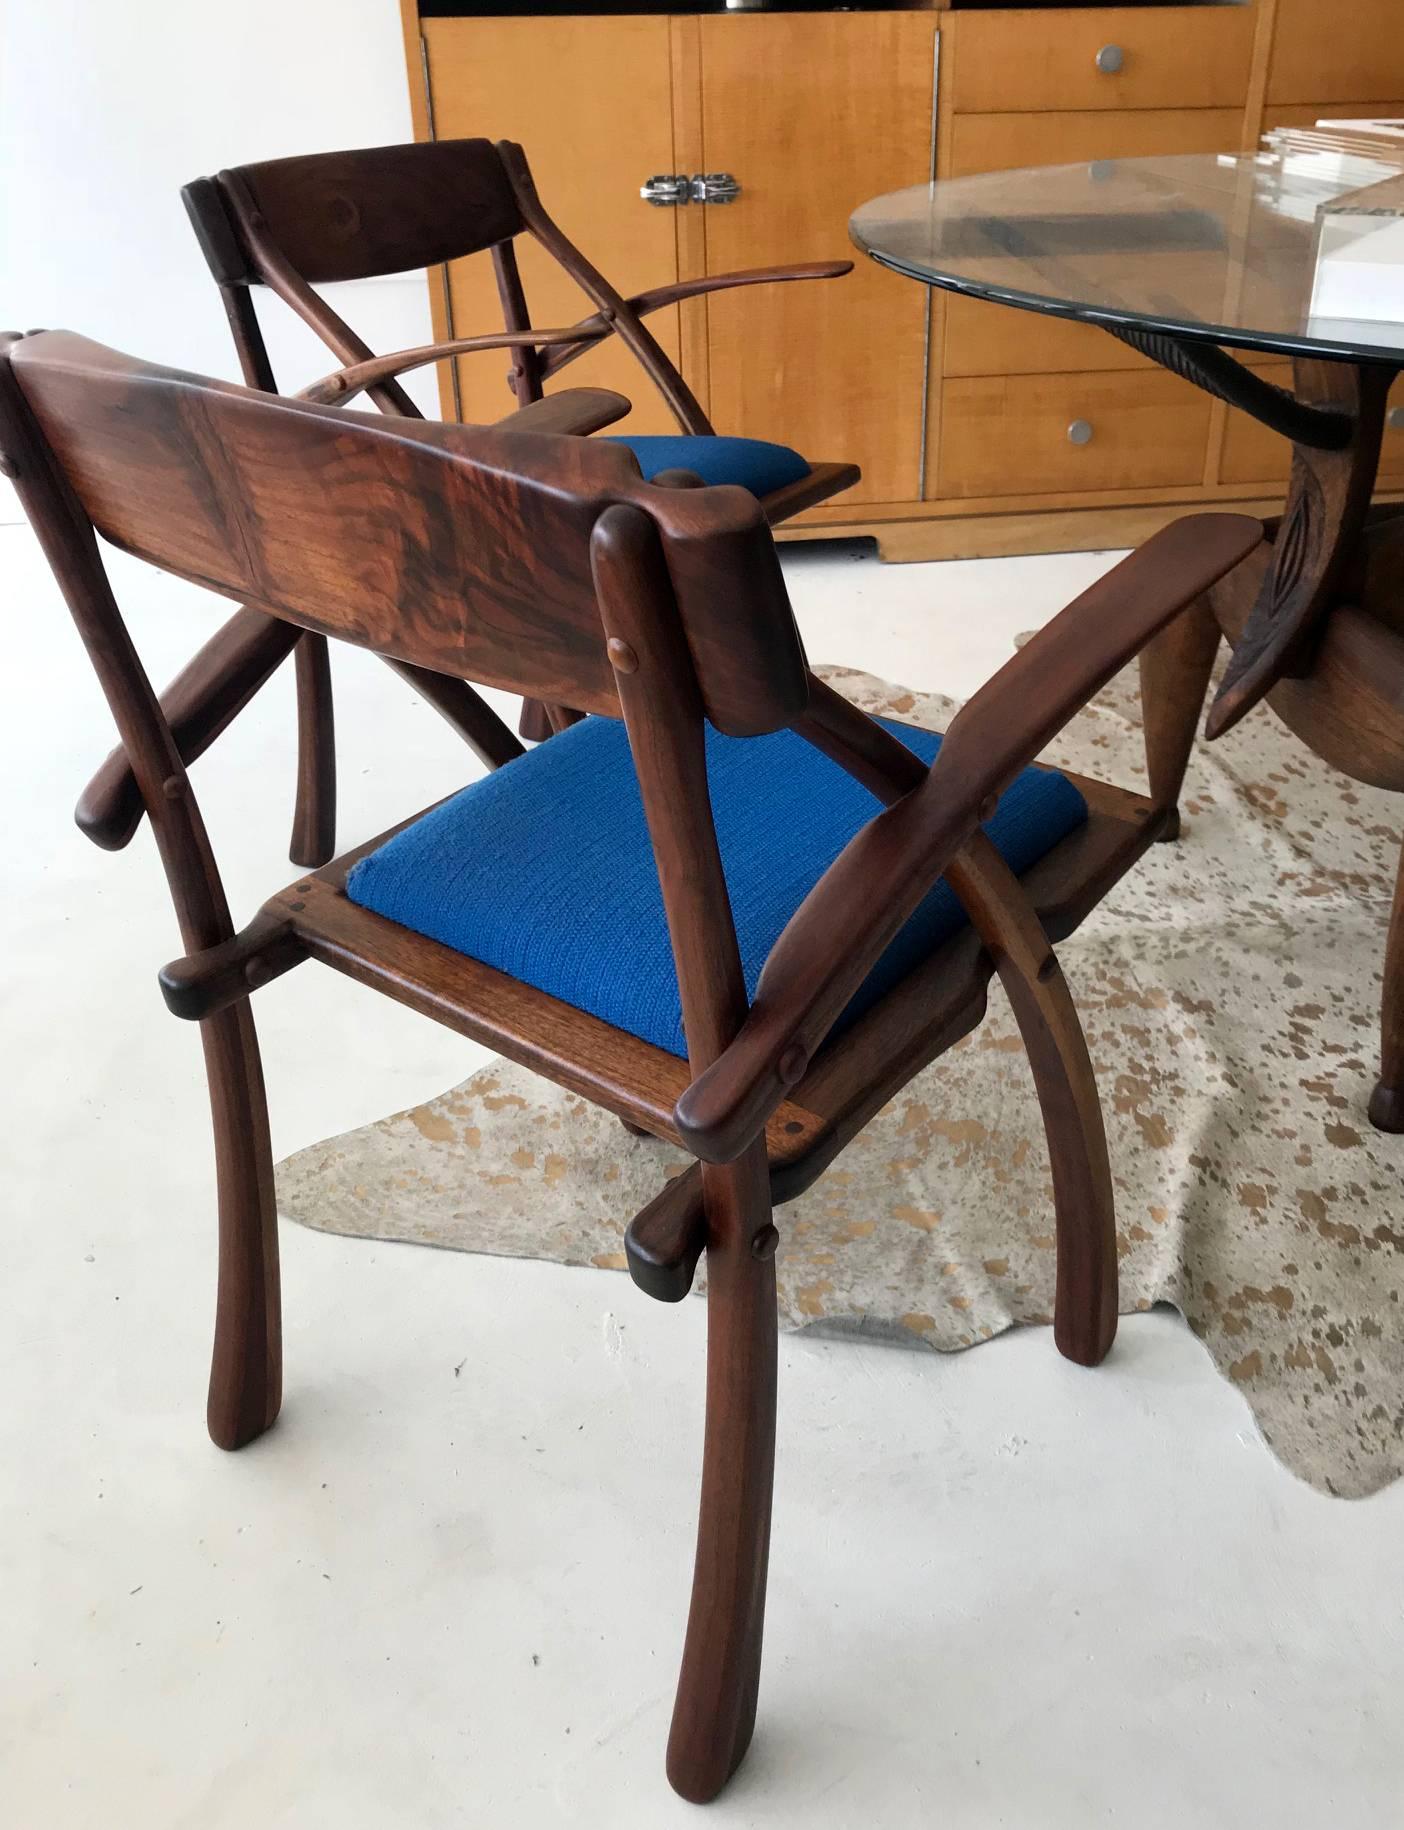 Une paire rare de fauteuils wishbone fabriqués en studio par Arthur Espenet Carpenter (1920-2006), Bolinas, CA. En noyer grainé, avec une construction à goujons apparents, un dossier façonné qui se prolonge dans les bras profilés. Les sièges